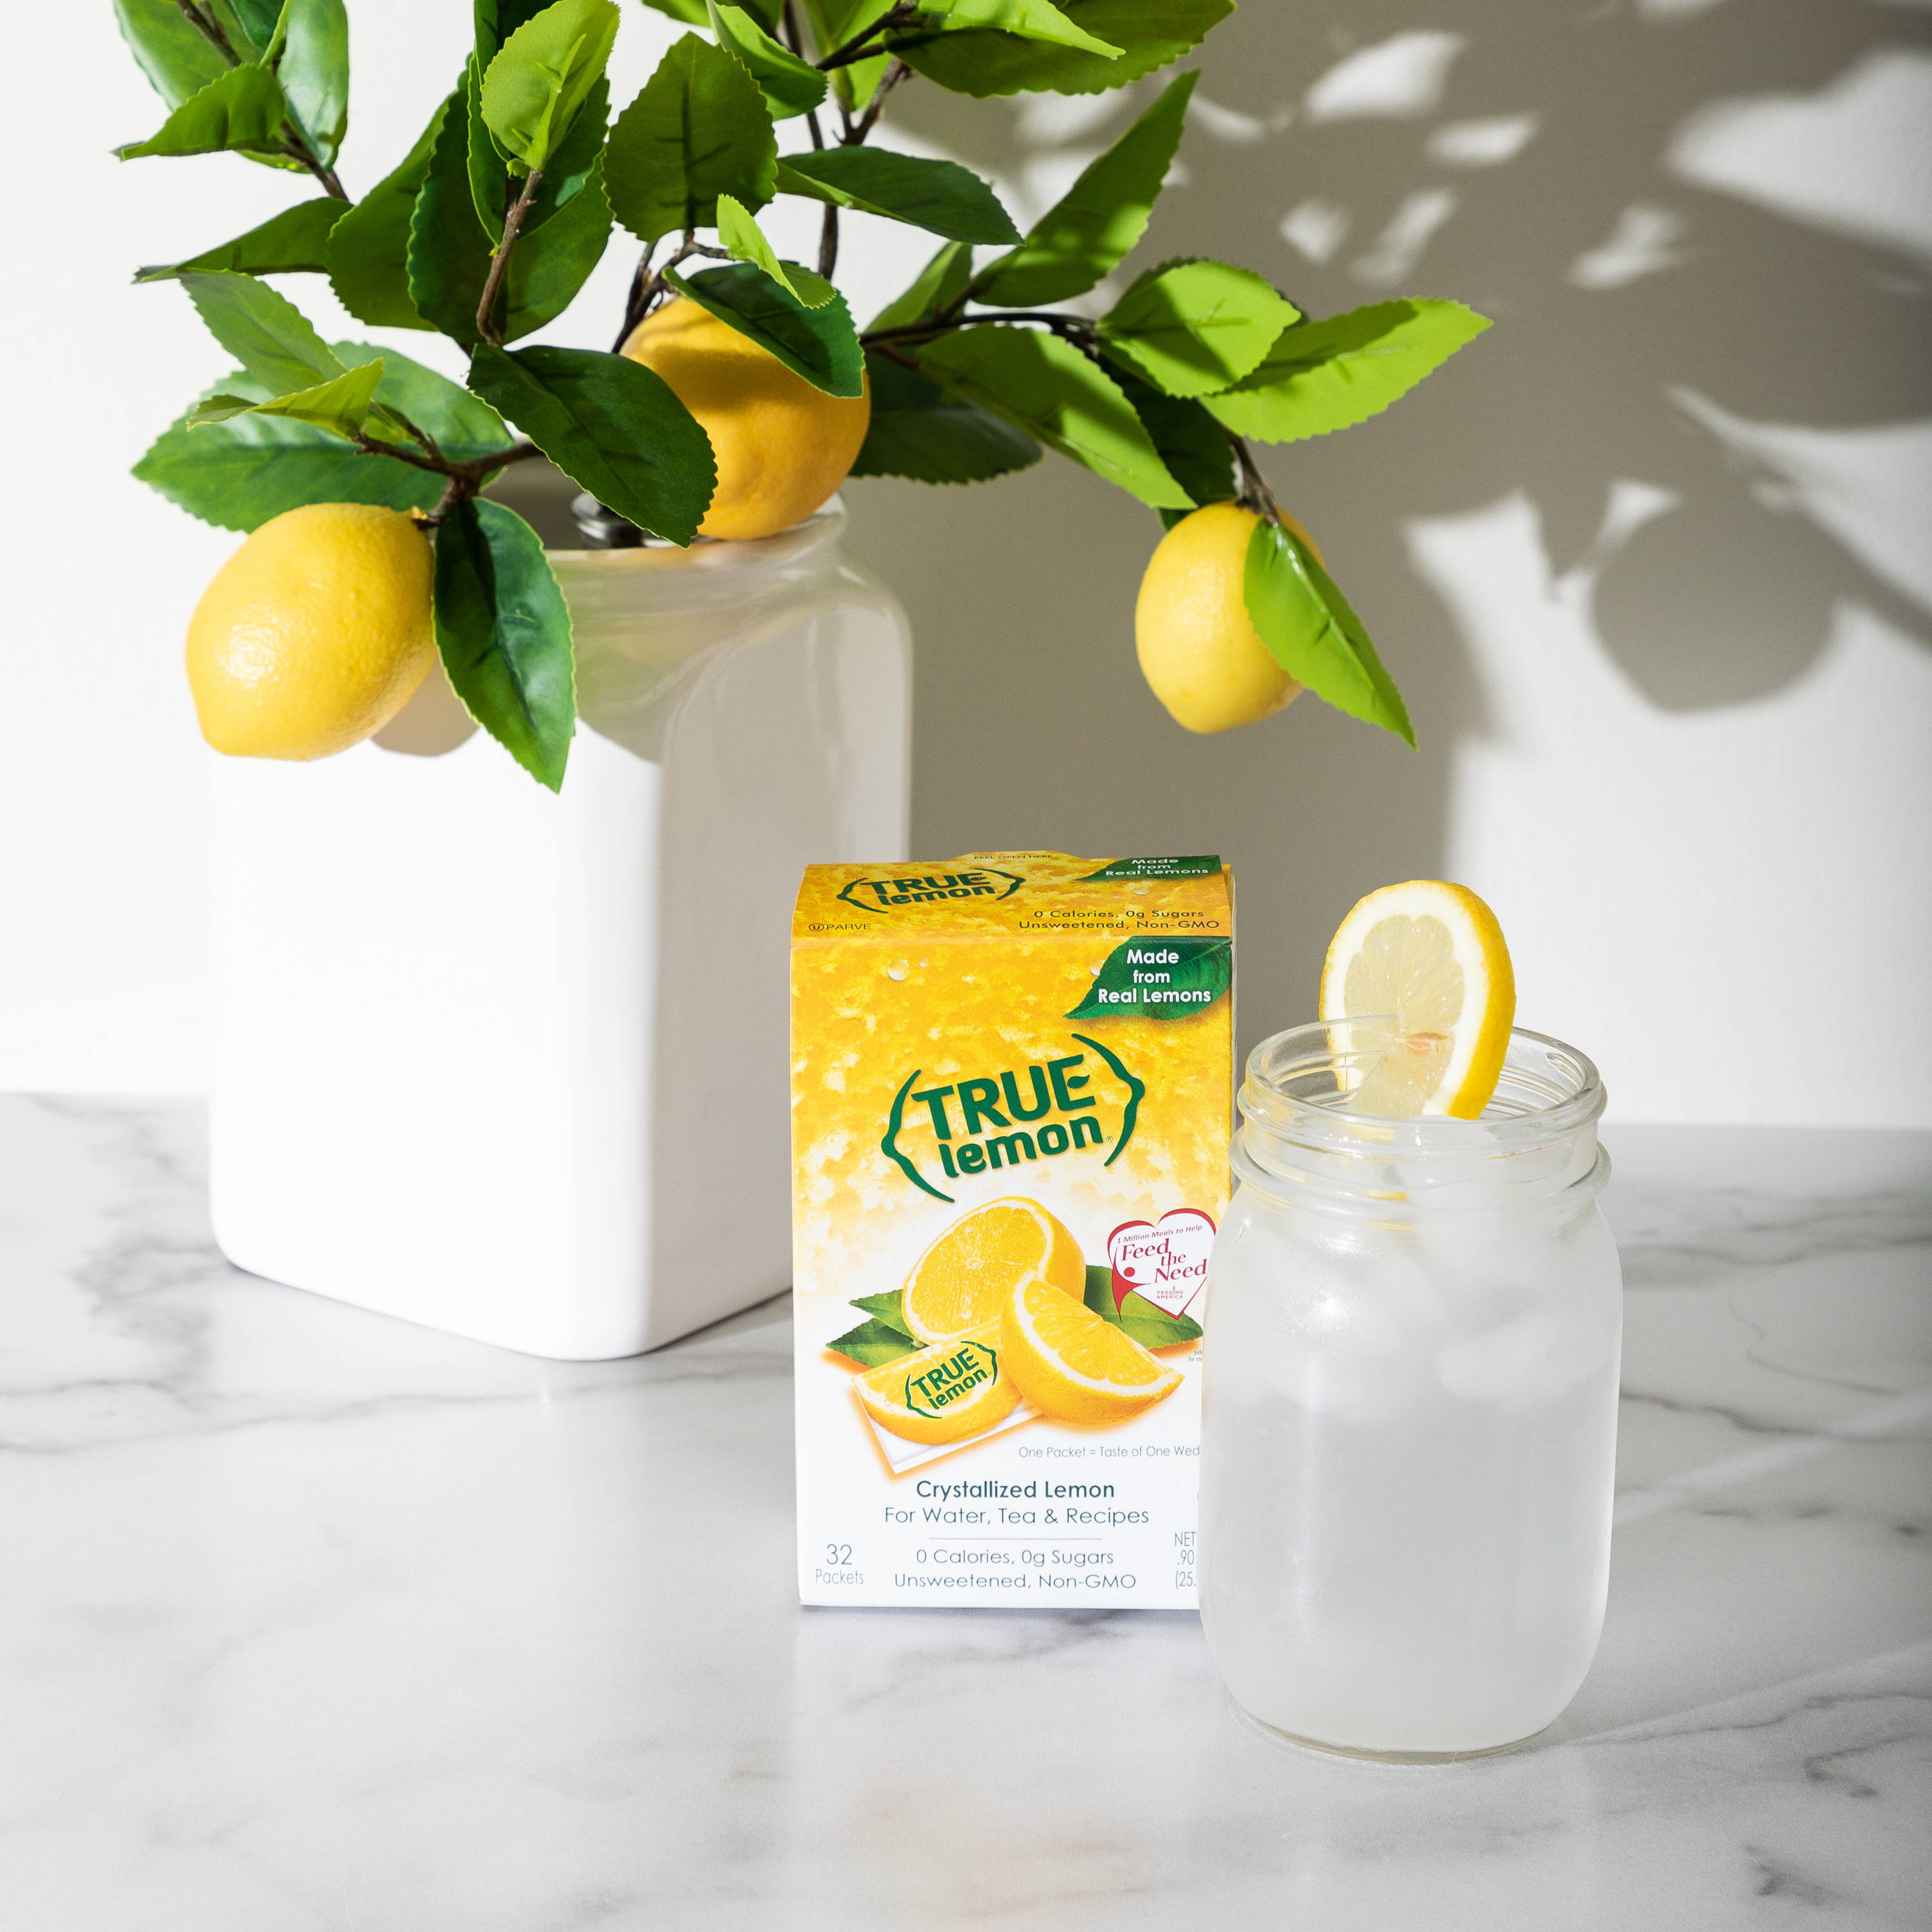 Lemon tree ,true lemon lemon flavoring packets. Jar with water and lemon slice.